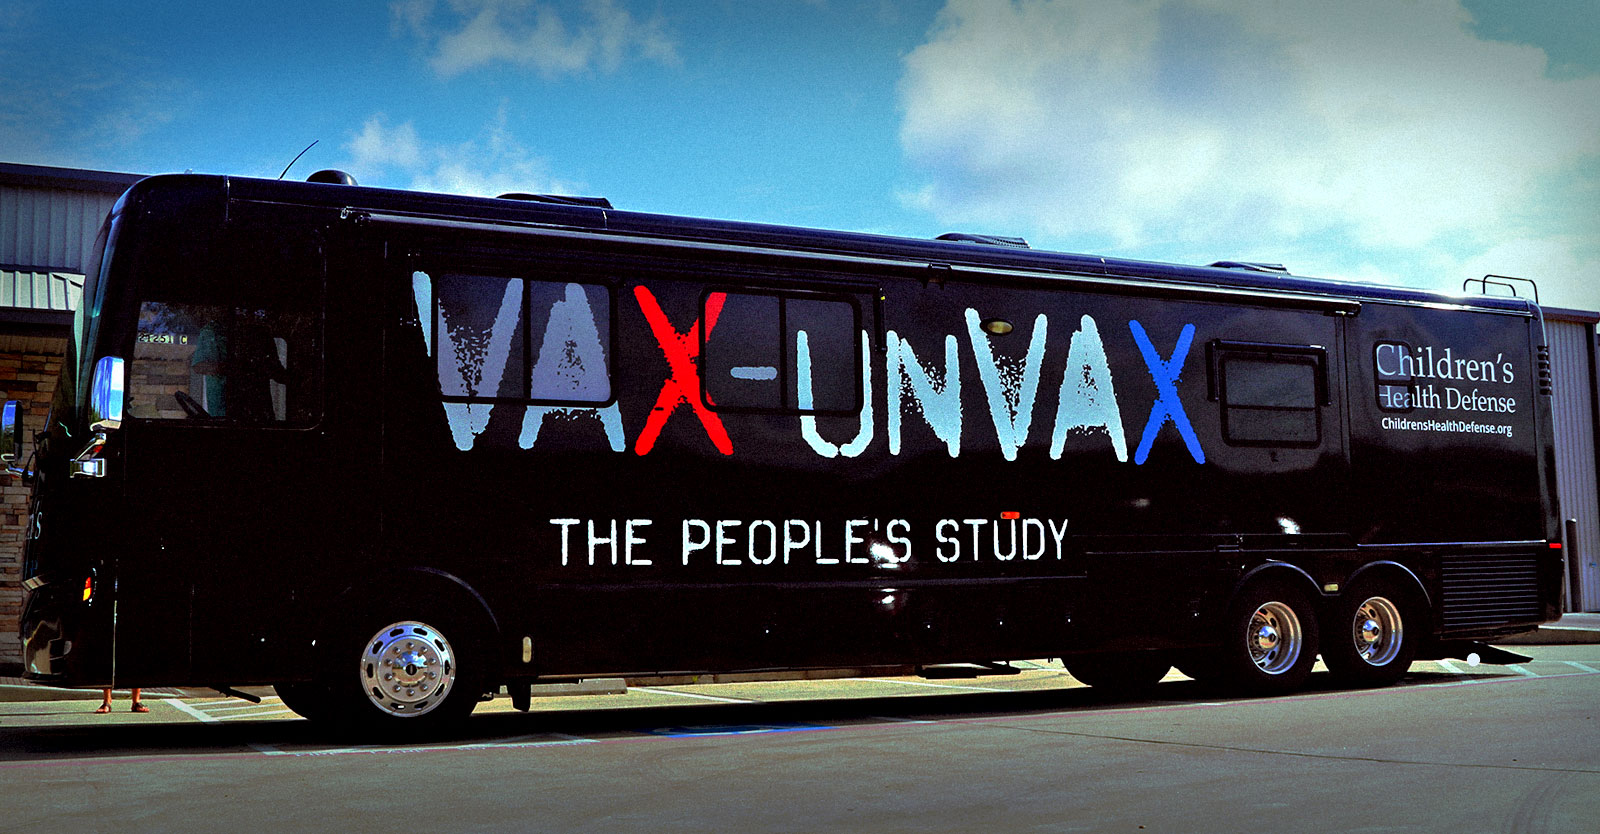 CHD's Vax-Unvax tour bus; image courtesy of CHD.